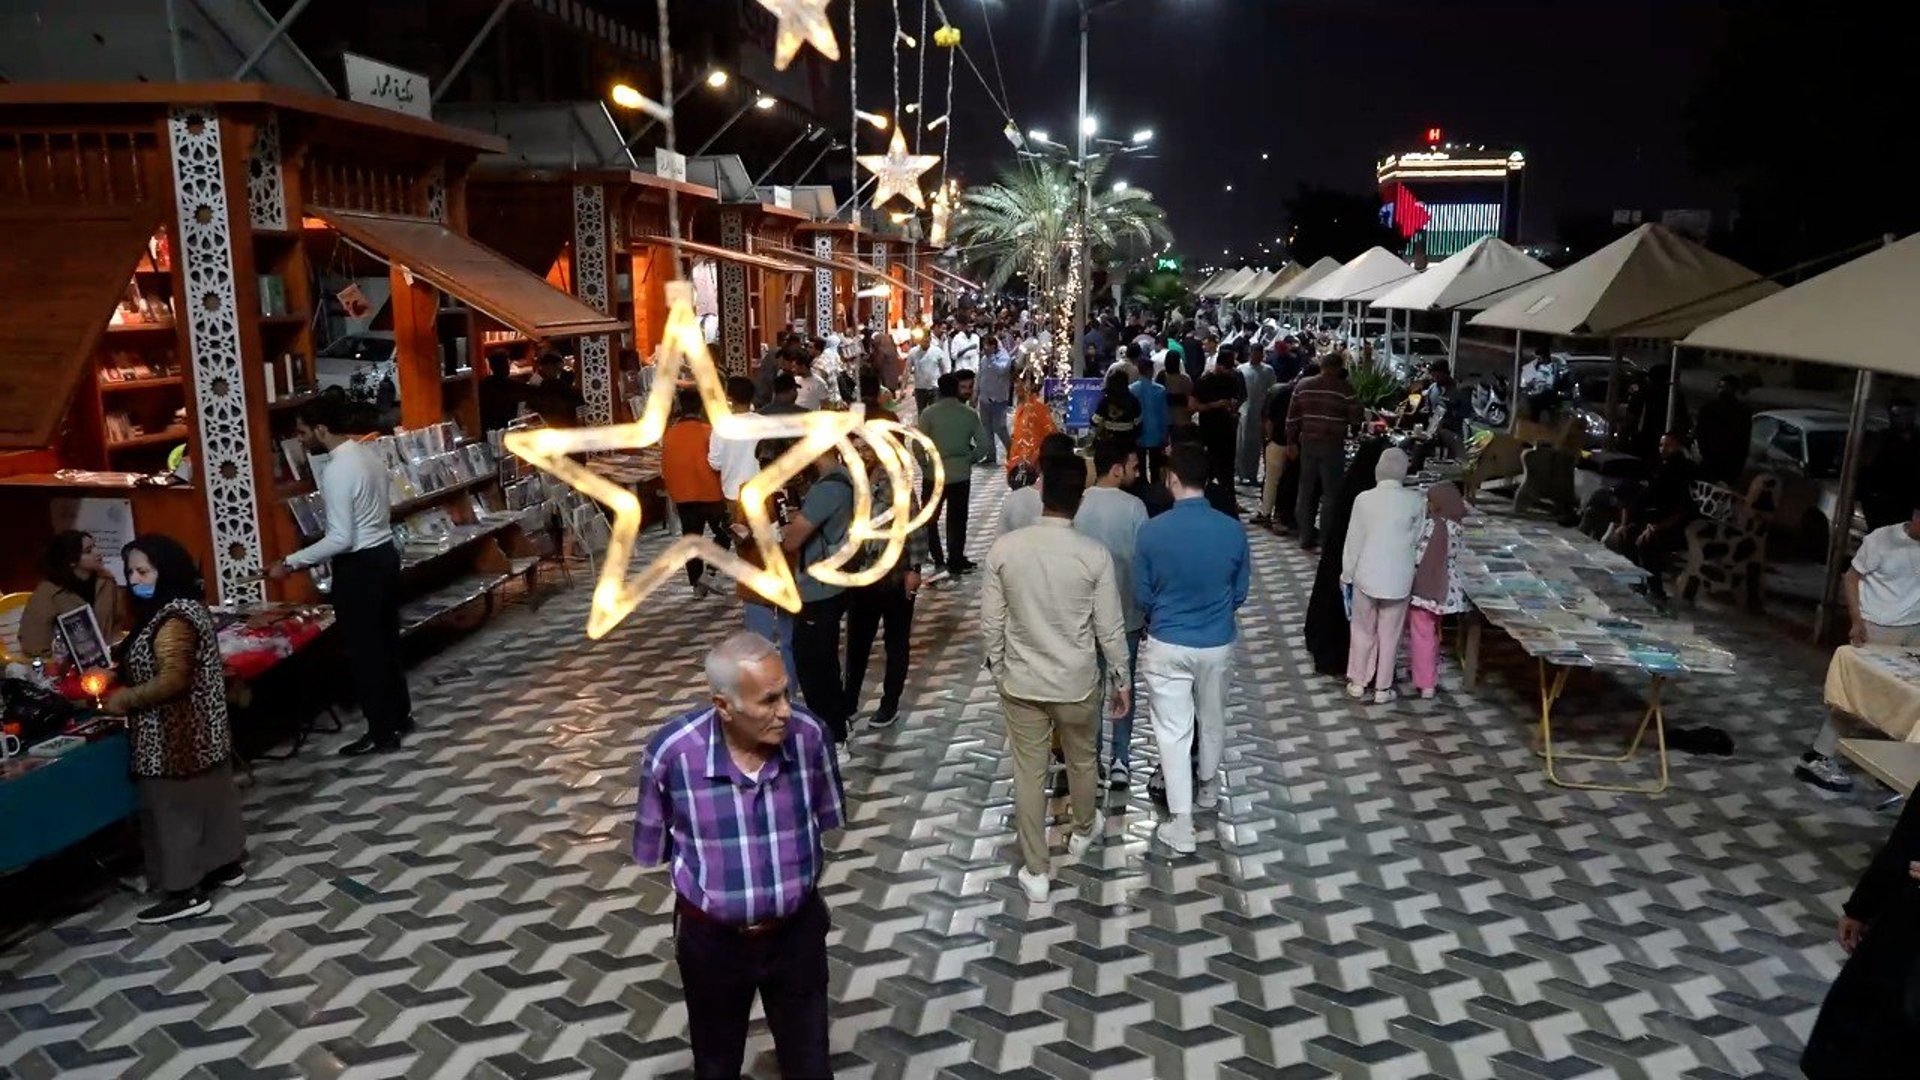 البصرة: شارع الكتاب مفتوح طوال ليالي رمضان وكتب اليهود ونوح كريمر تتصدر (فيديو)